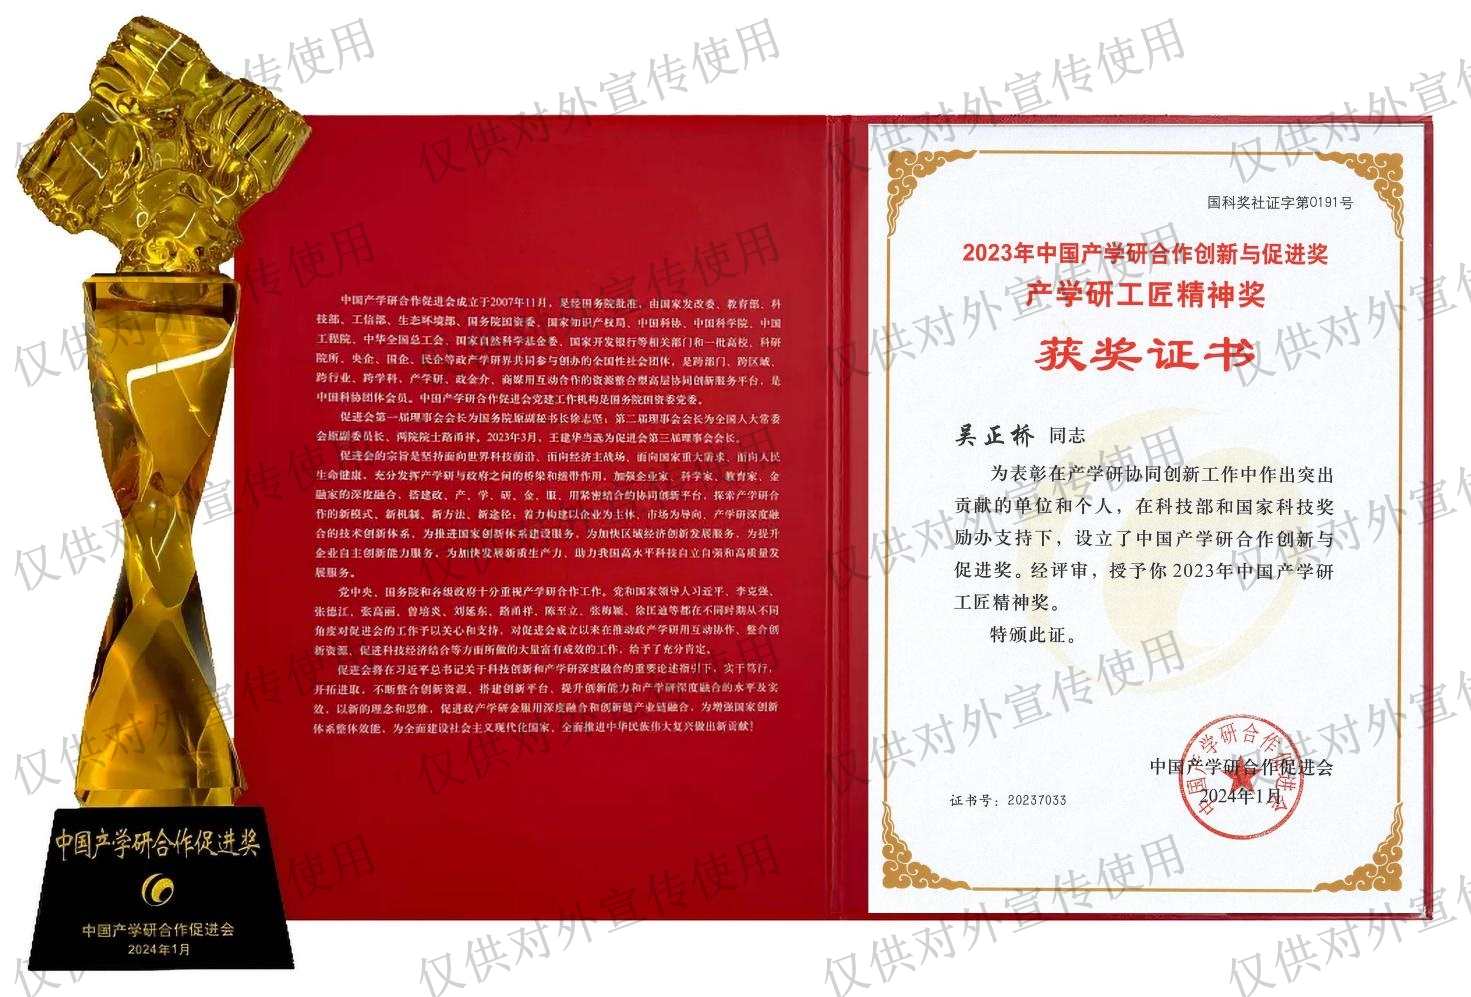 吴正桥获中国产学研合作创新与促进奖